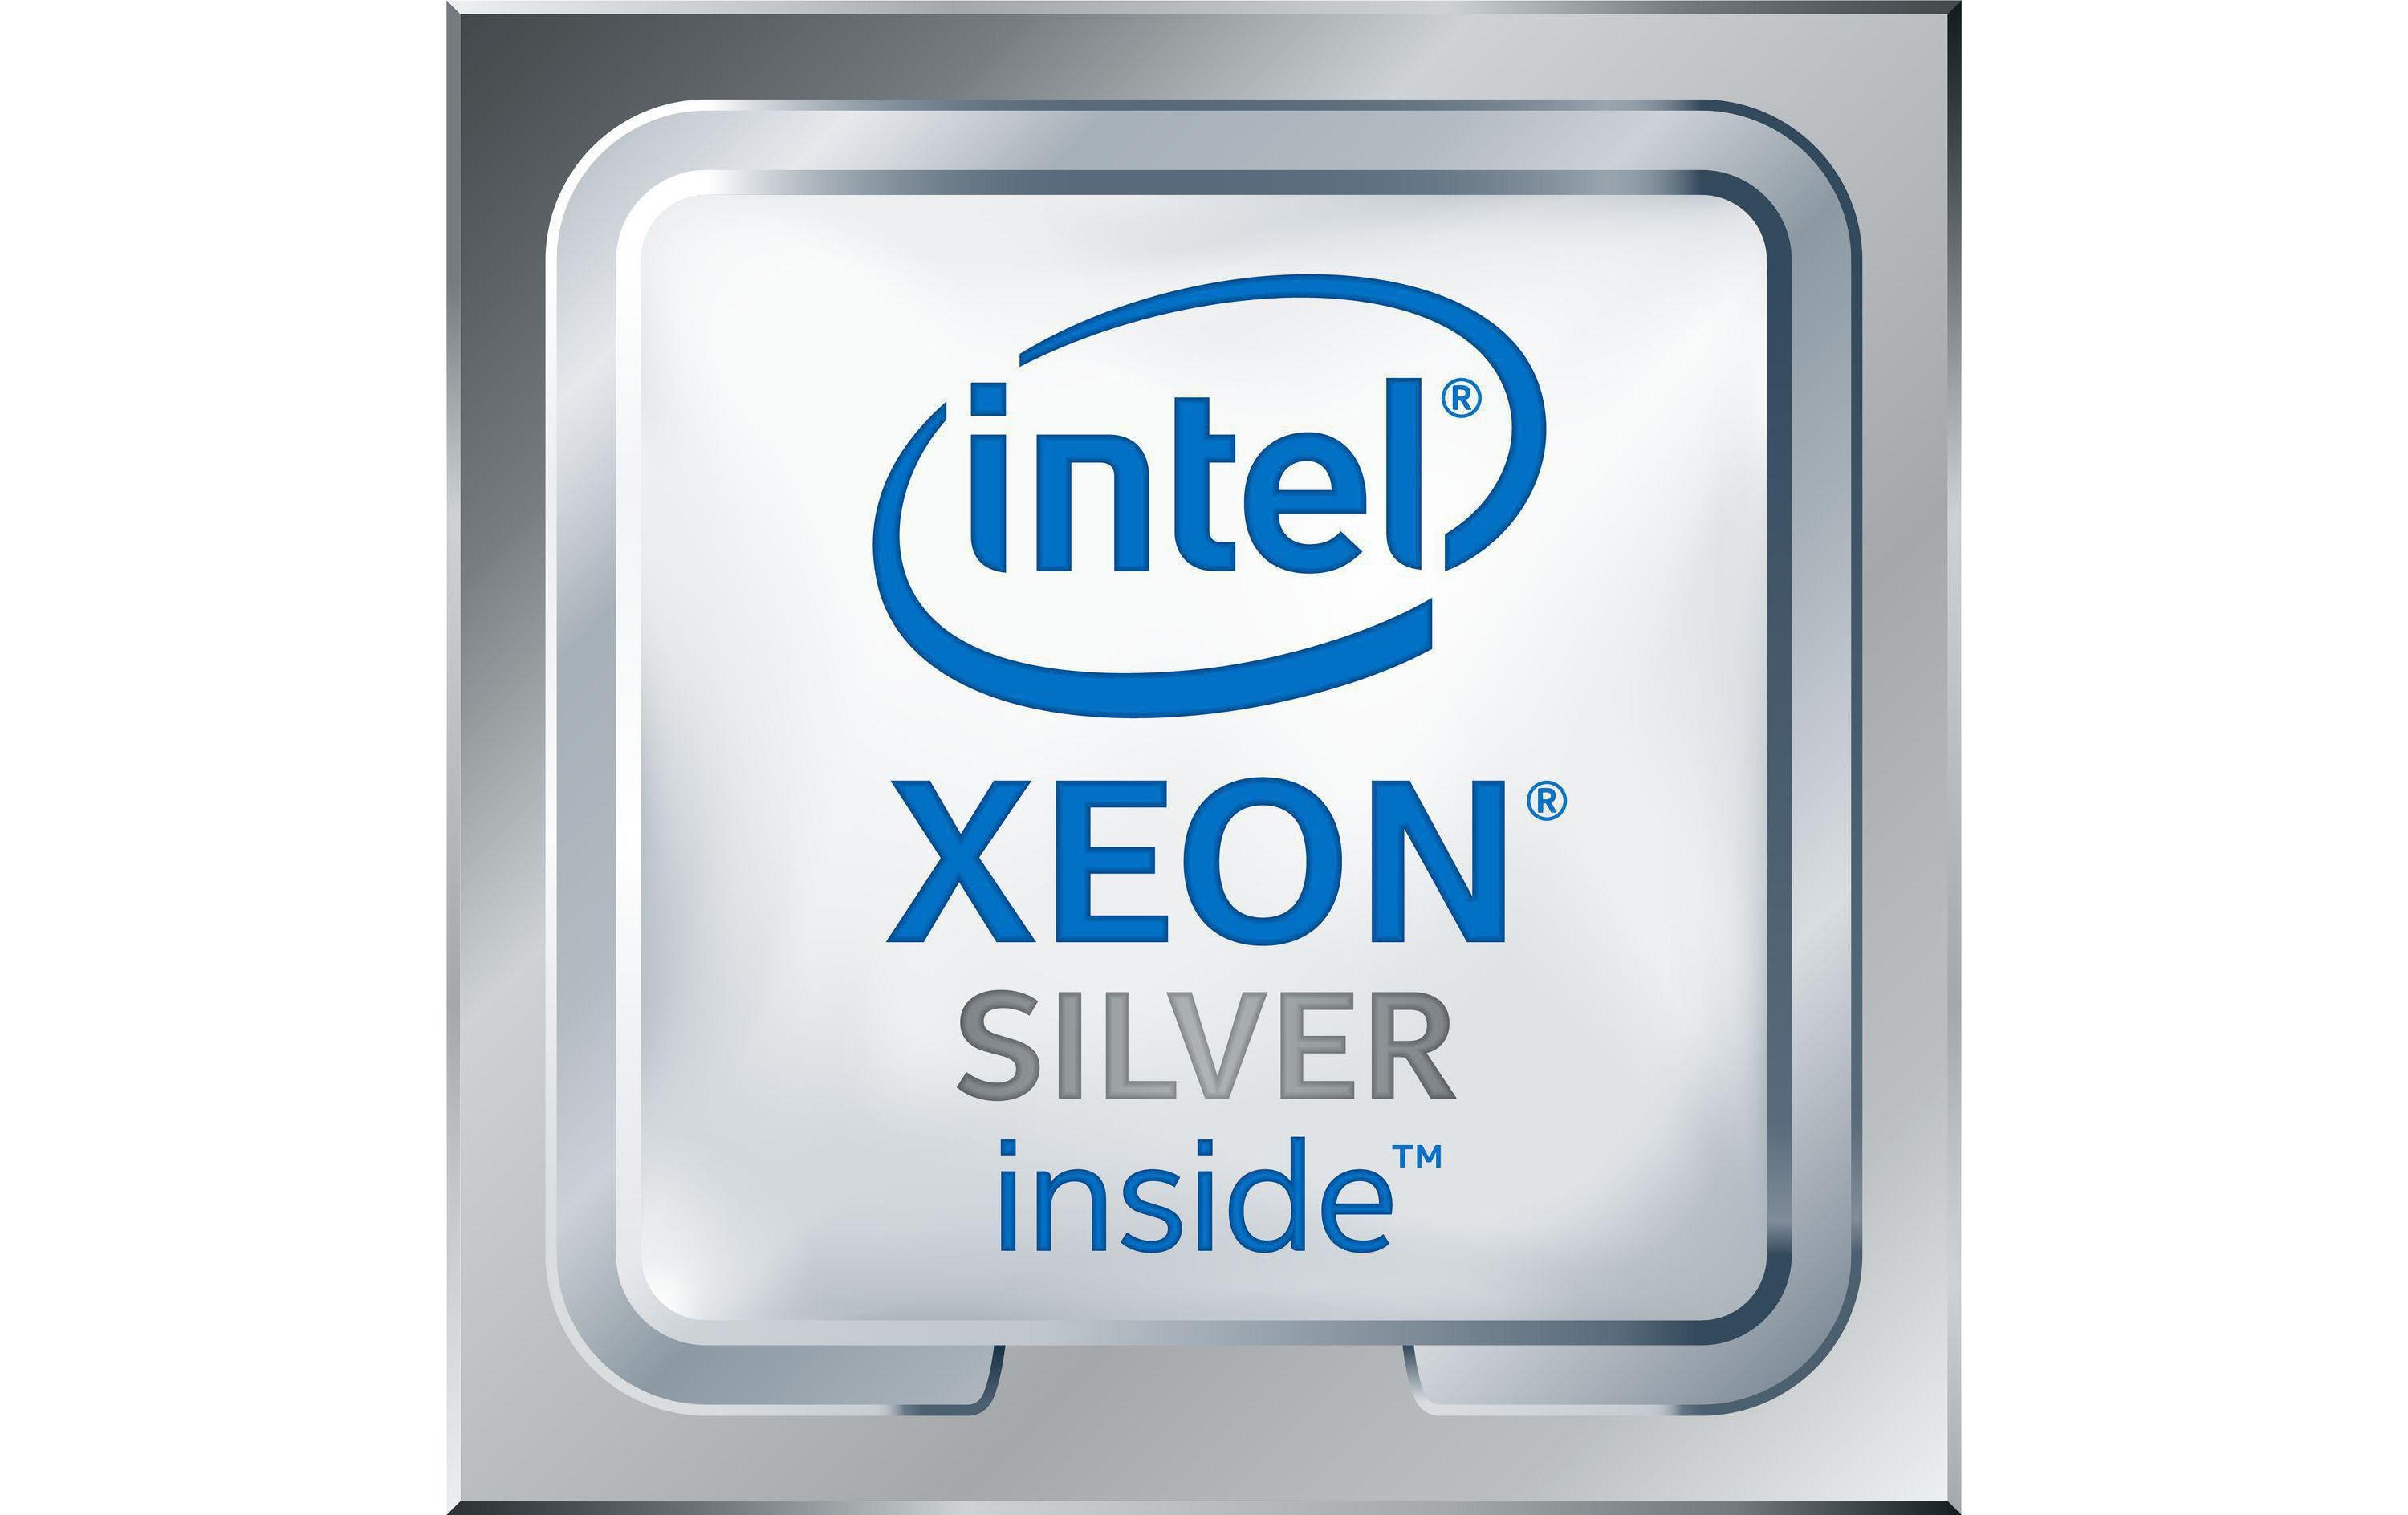 Intel Xeon Silver 4208 - 2.1 GHz - 8 Kerne - 16 Threads - 11 MB Cache-Speicher - für PowerEdge C6420, FC640, M640, R440, R540, R